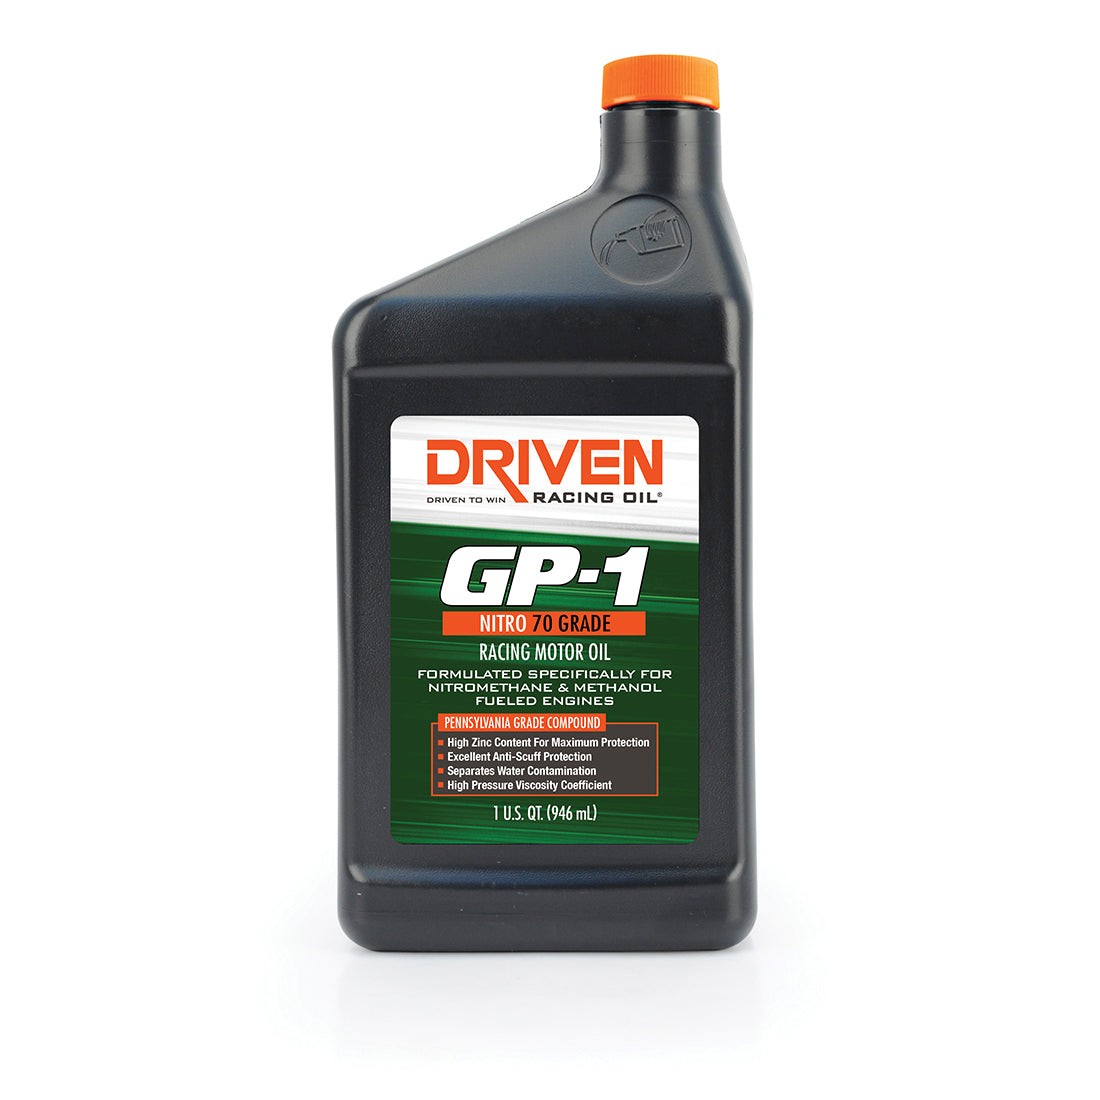 Driven Racing Oil GP-1 Nitro 70 Grade 1 Quart JGP19706